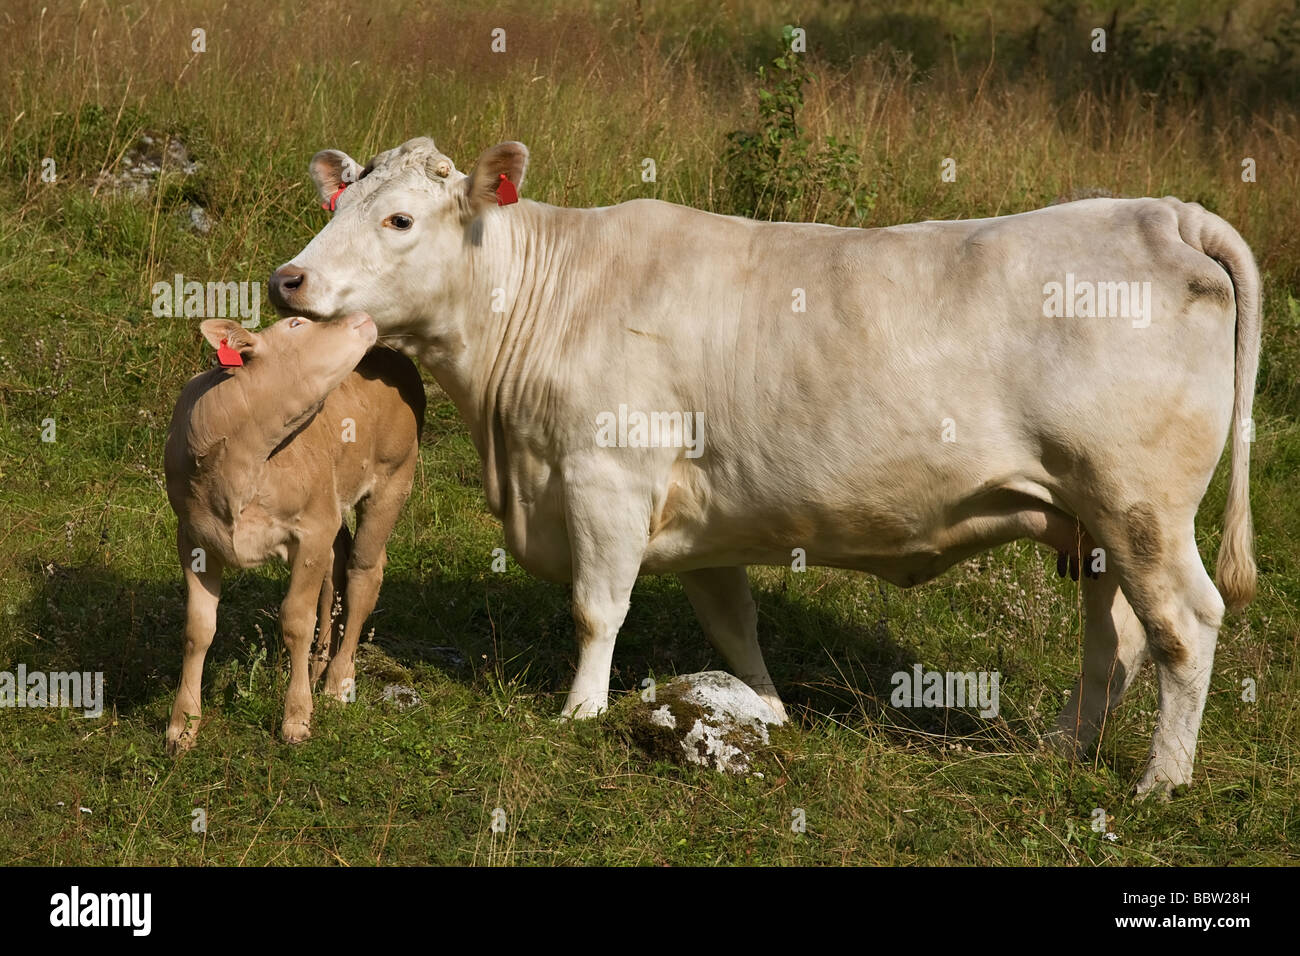 Kalb kuschelte sanft sich auf die Kuh auf der grünen Wiese Stockfoto